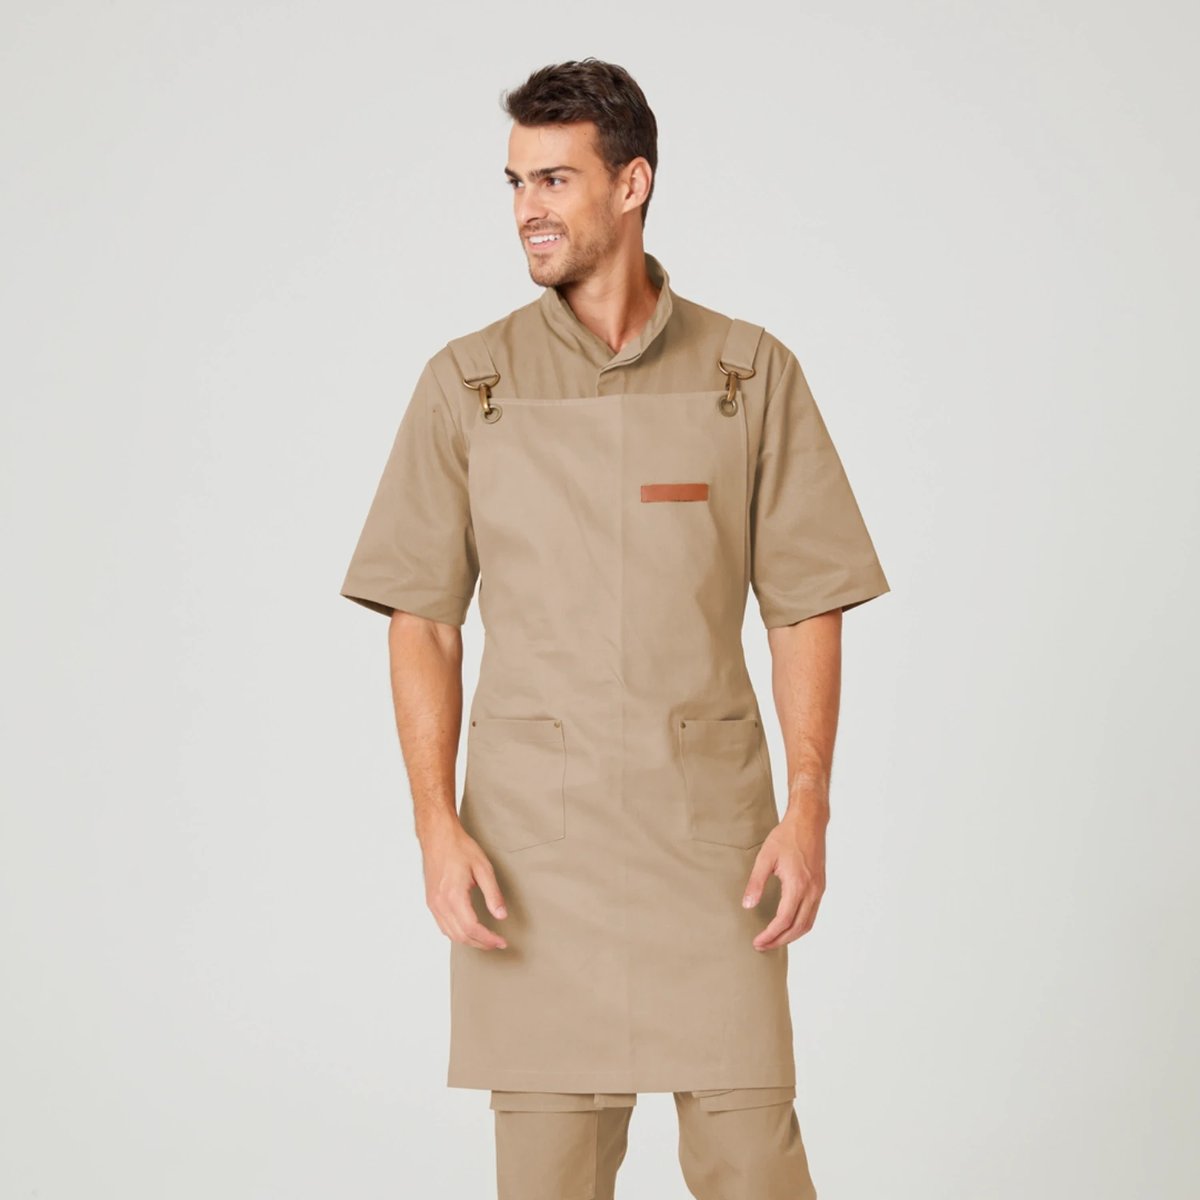 uniforme-jardineiro-avental